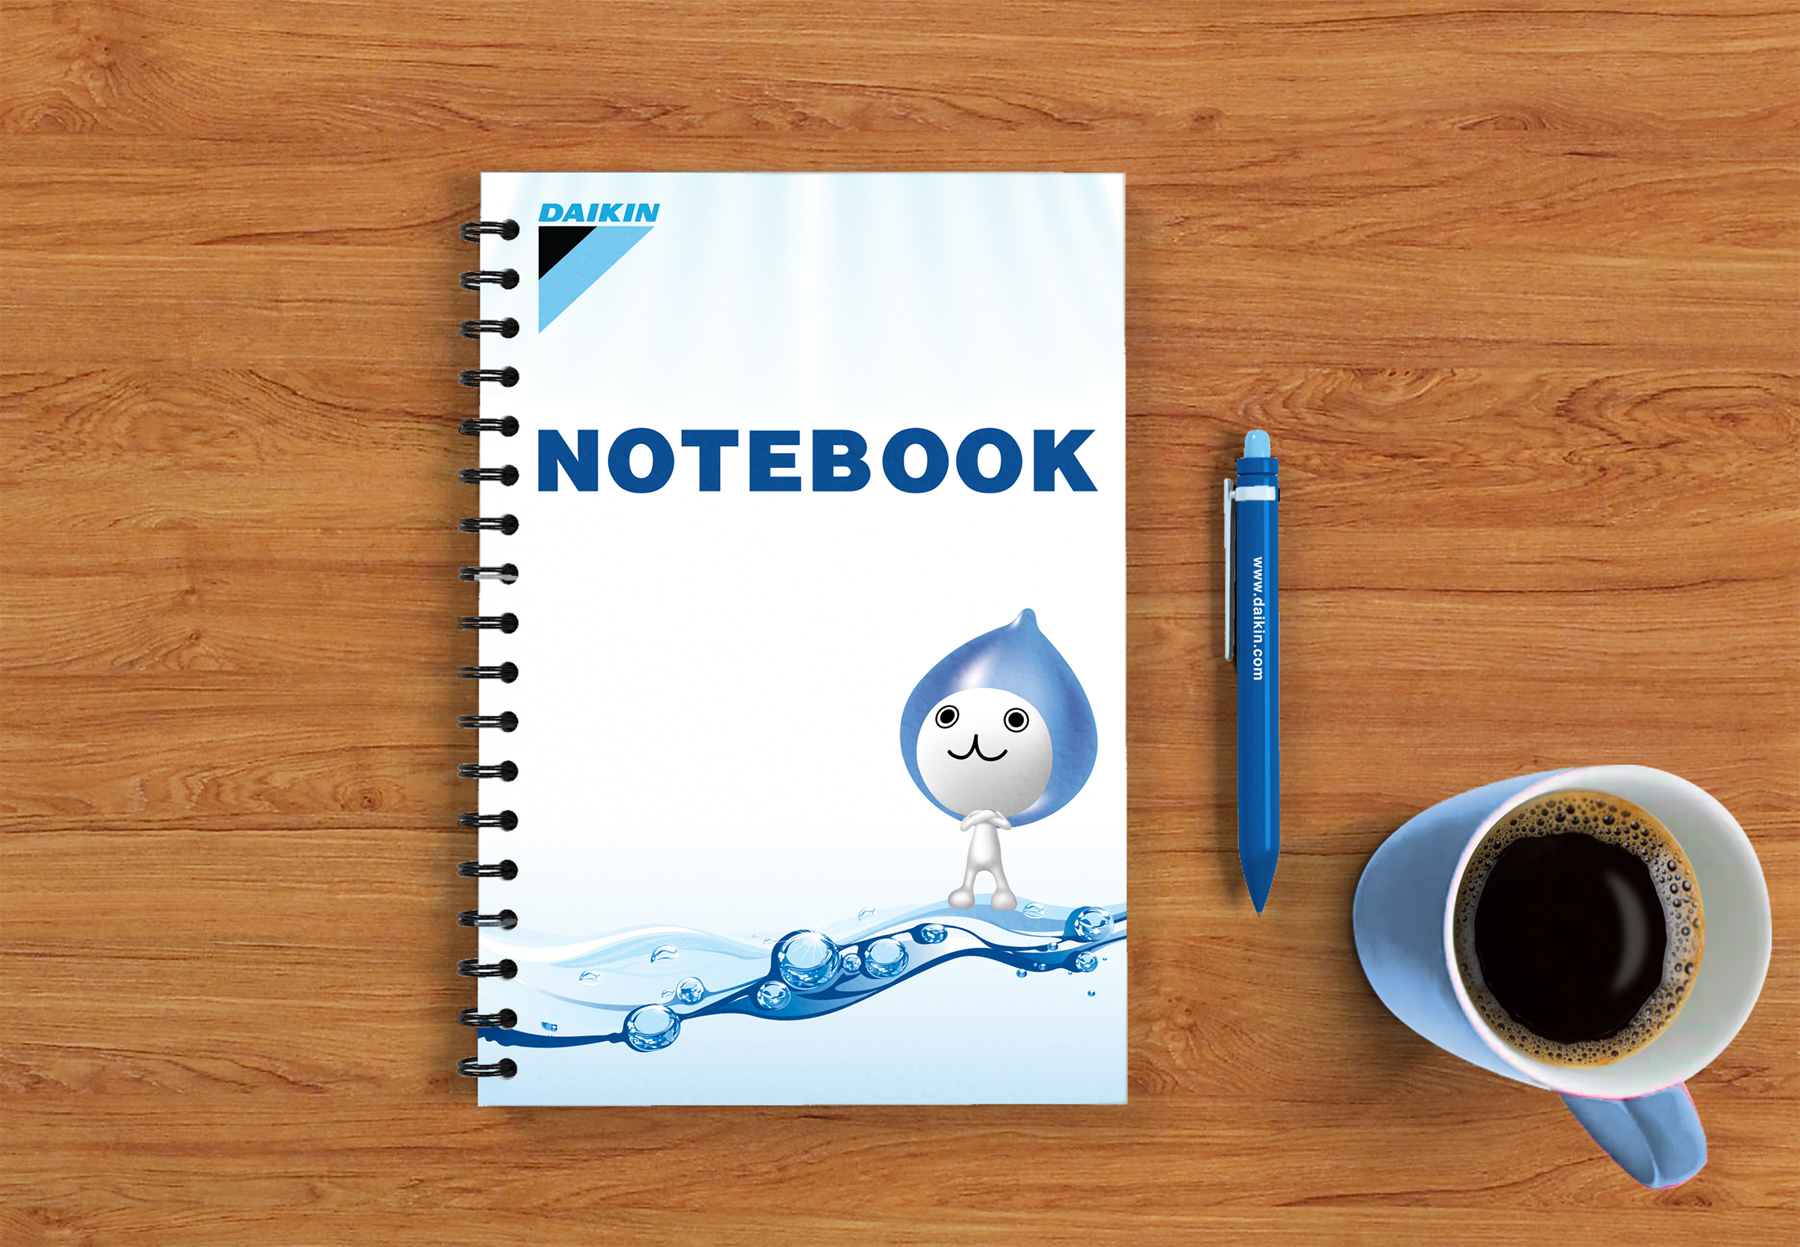 Notebook (Daikin)